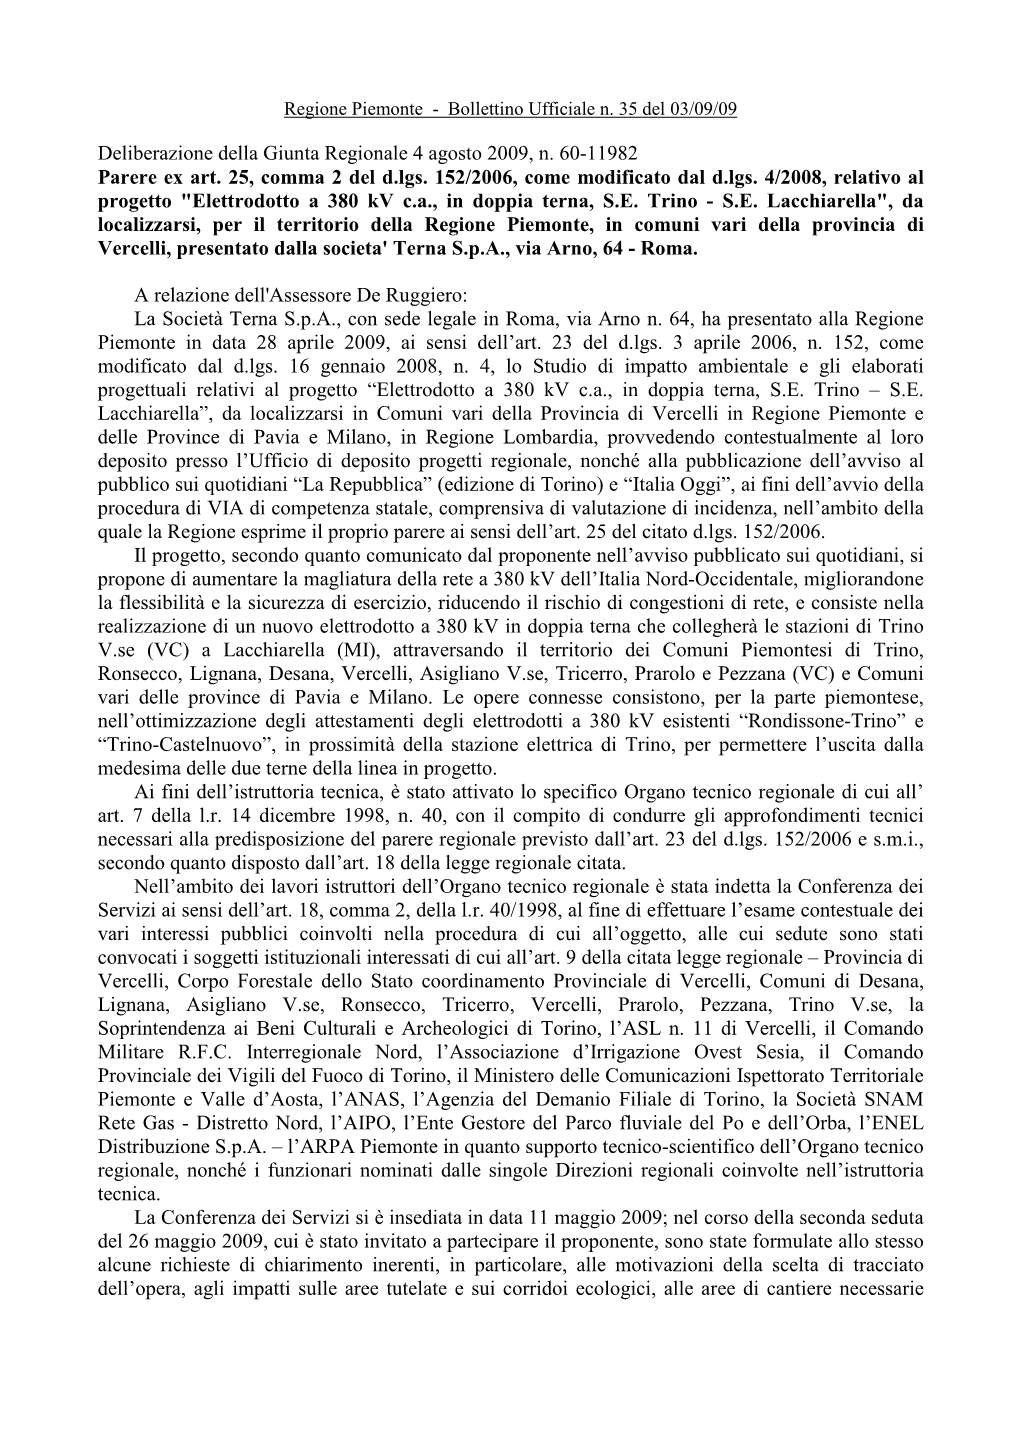 Deliberazione Della Giunta Regionale 4 Agosto 2009, N. 60-11982 Parere Ex Art. 25, Comma 2 Del D.Lgs. 152/2006, Come Modificato Dal D.Lgs